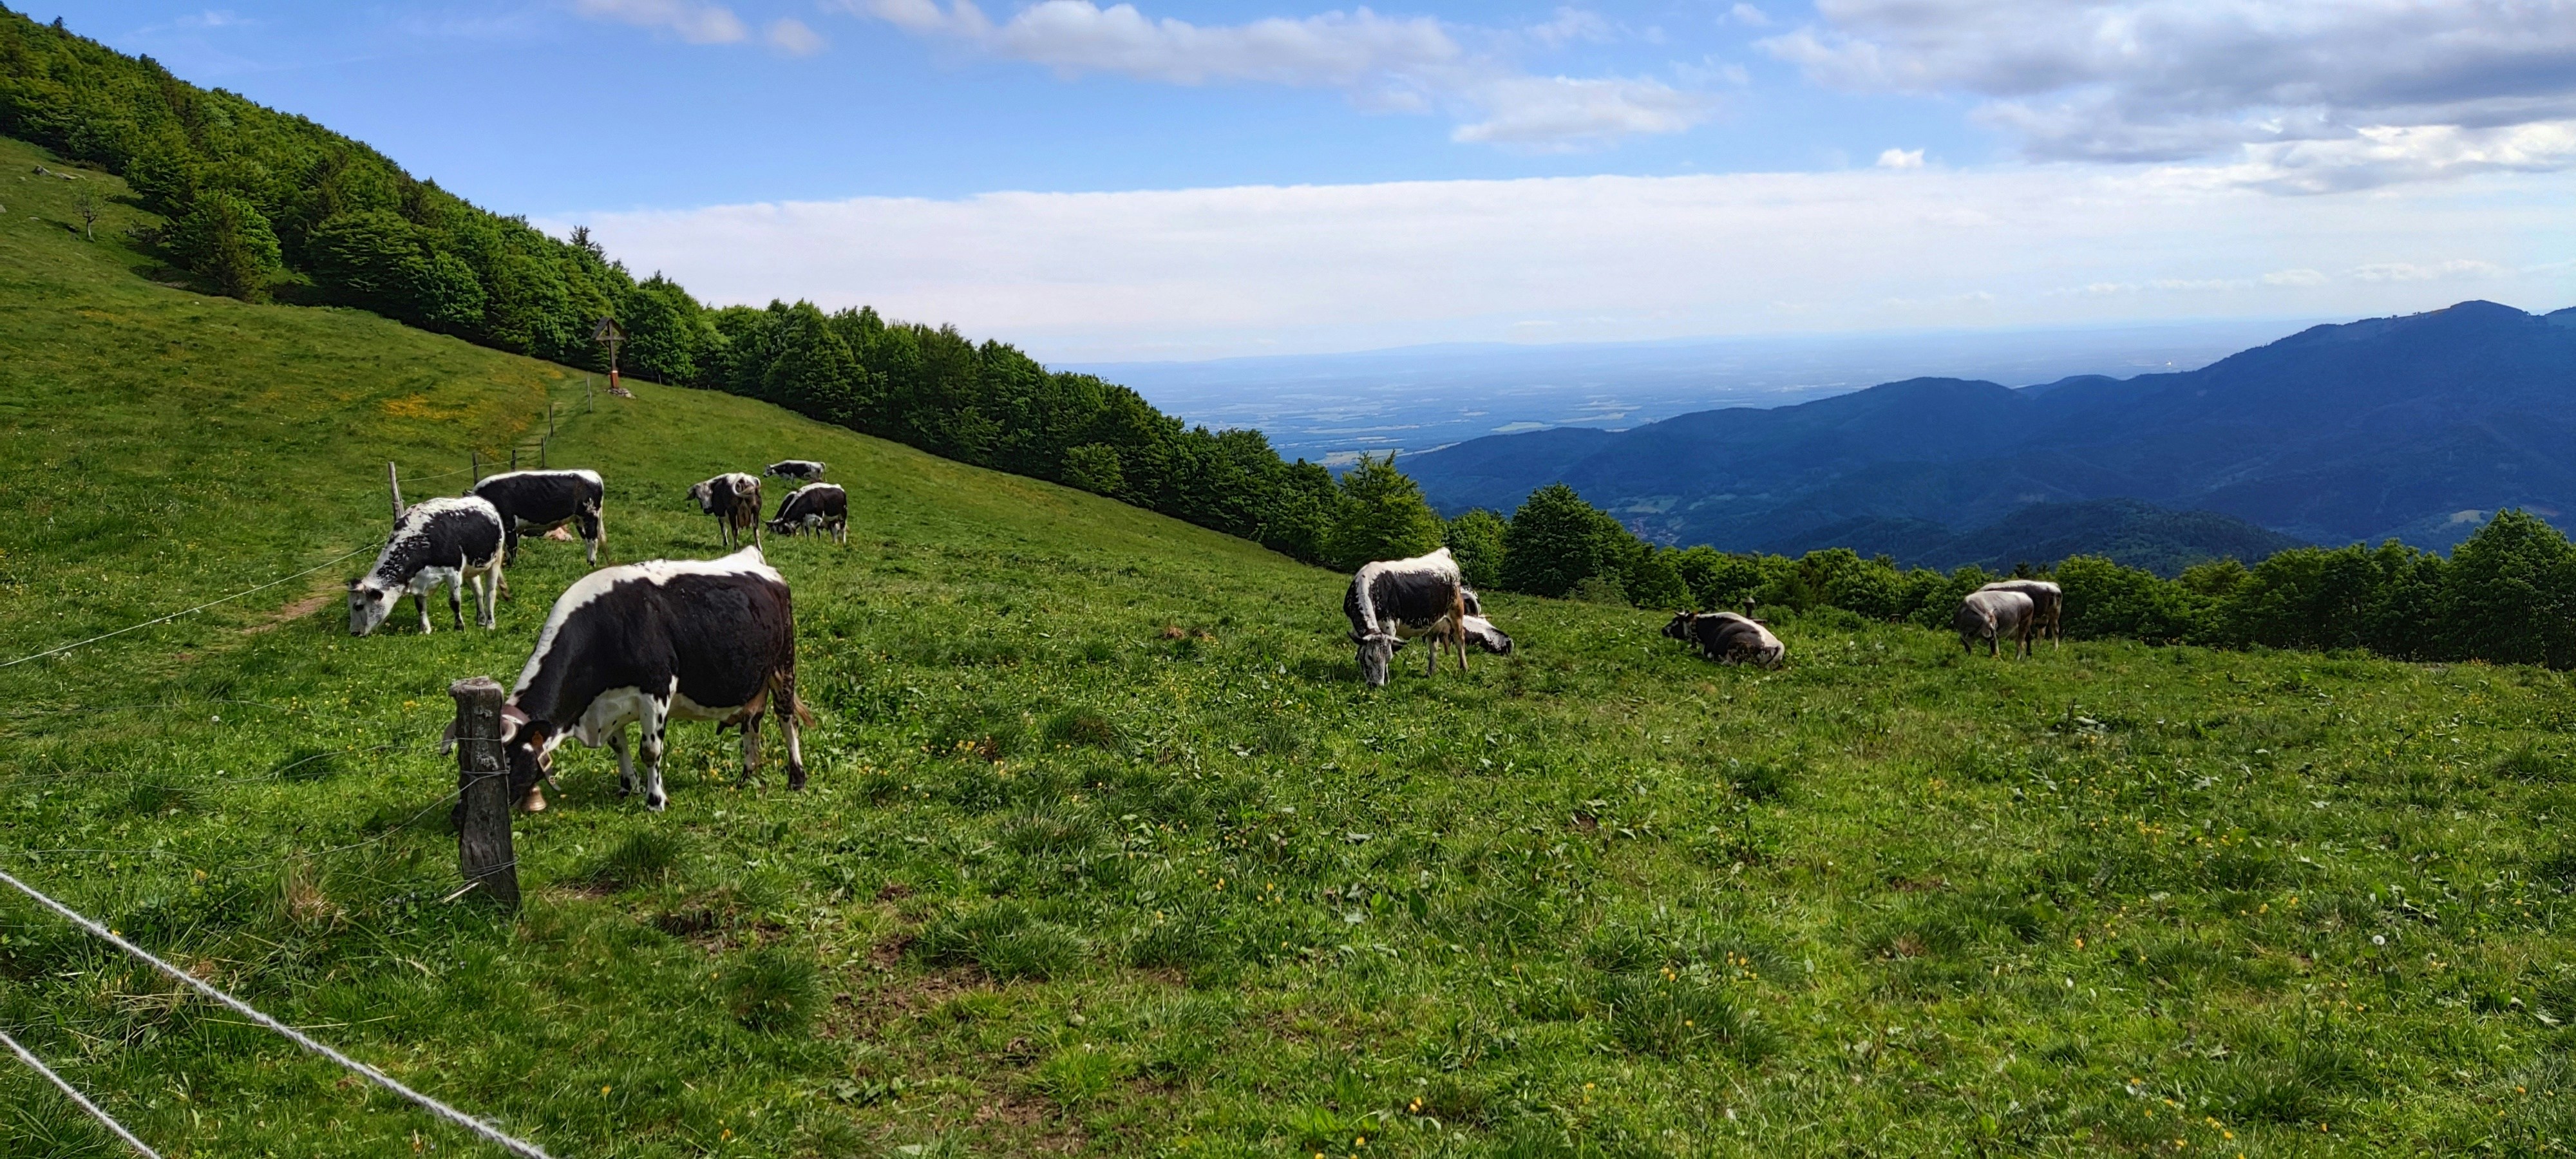 Landscape of Le Ballon des Vosges with cows